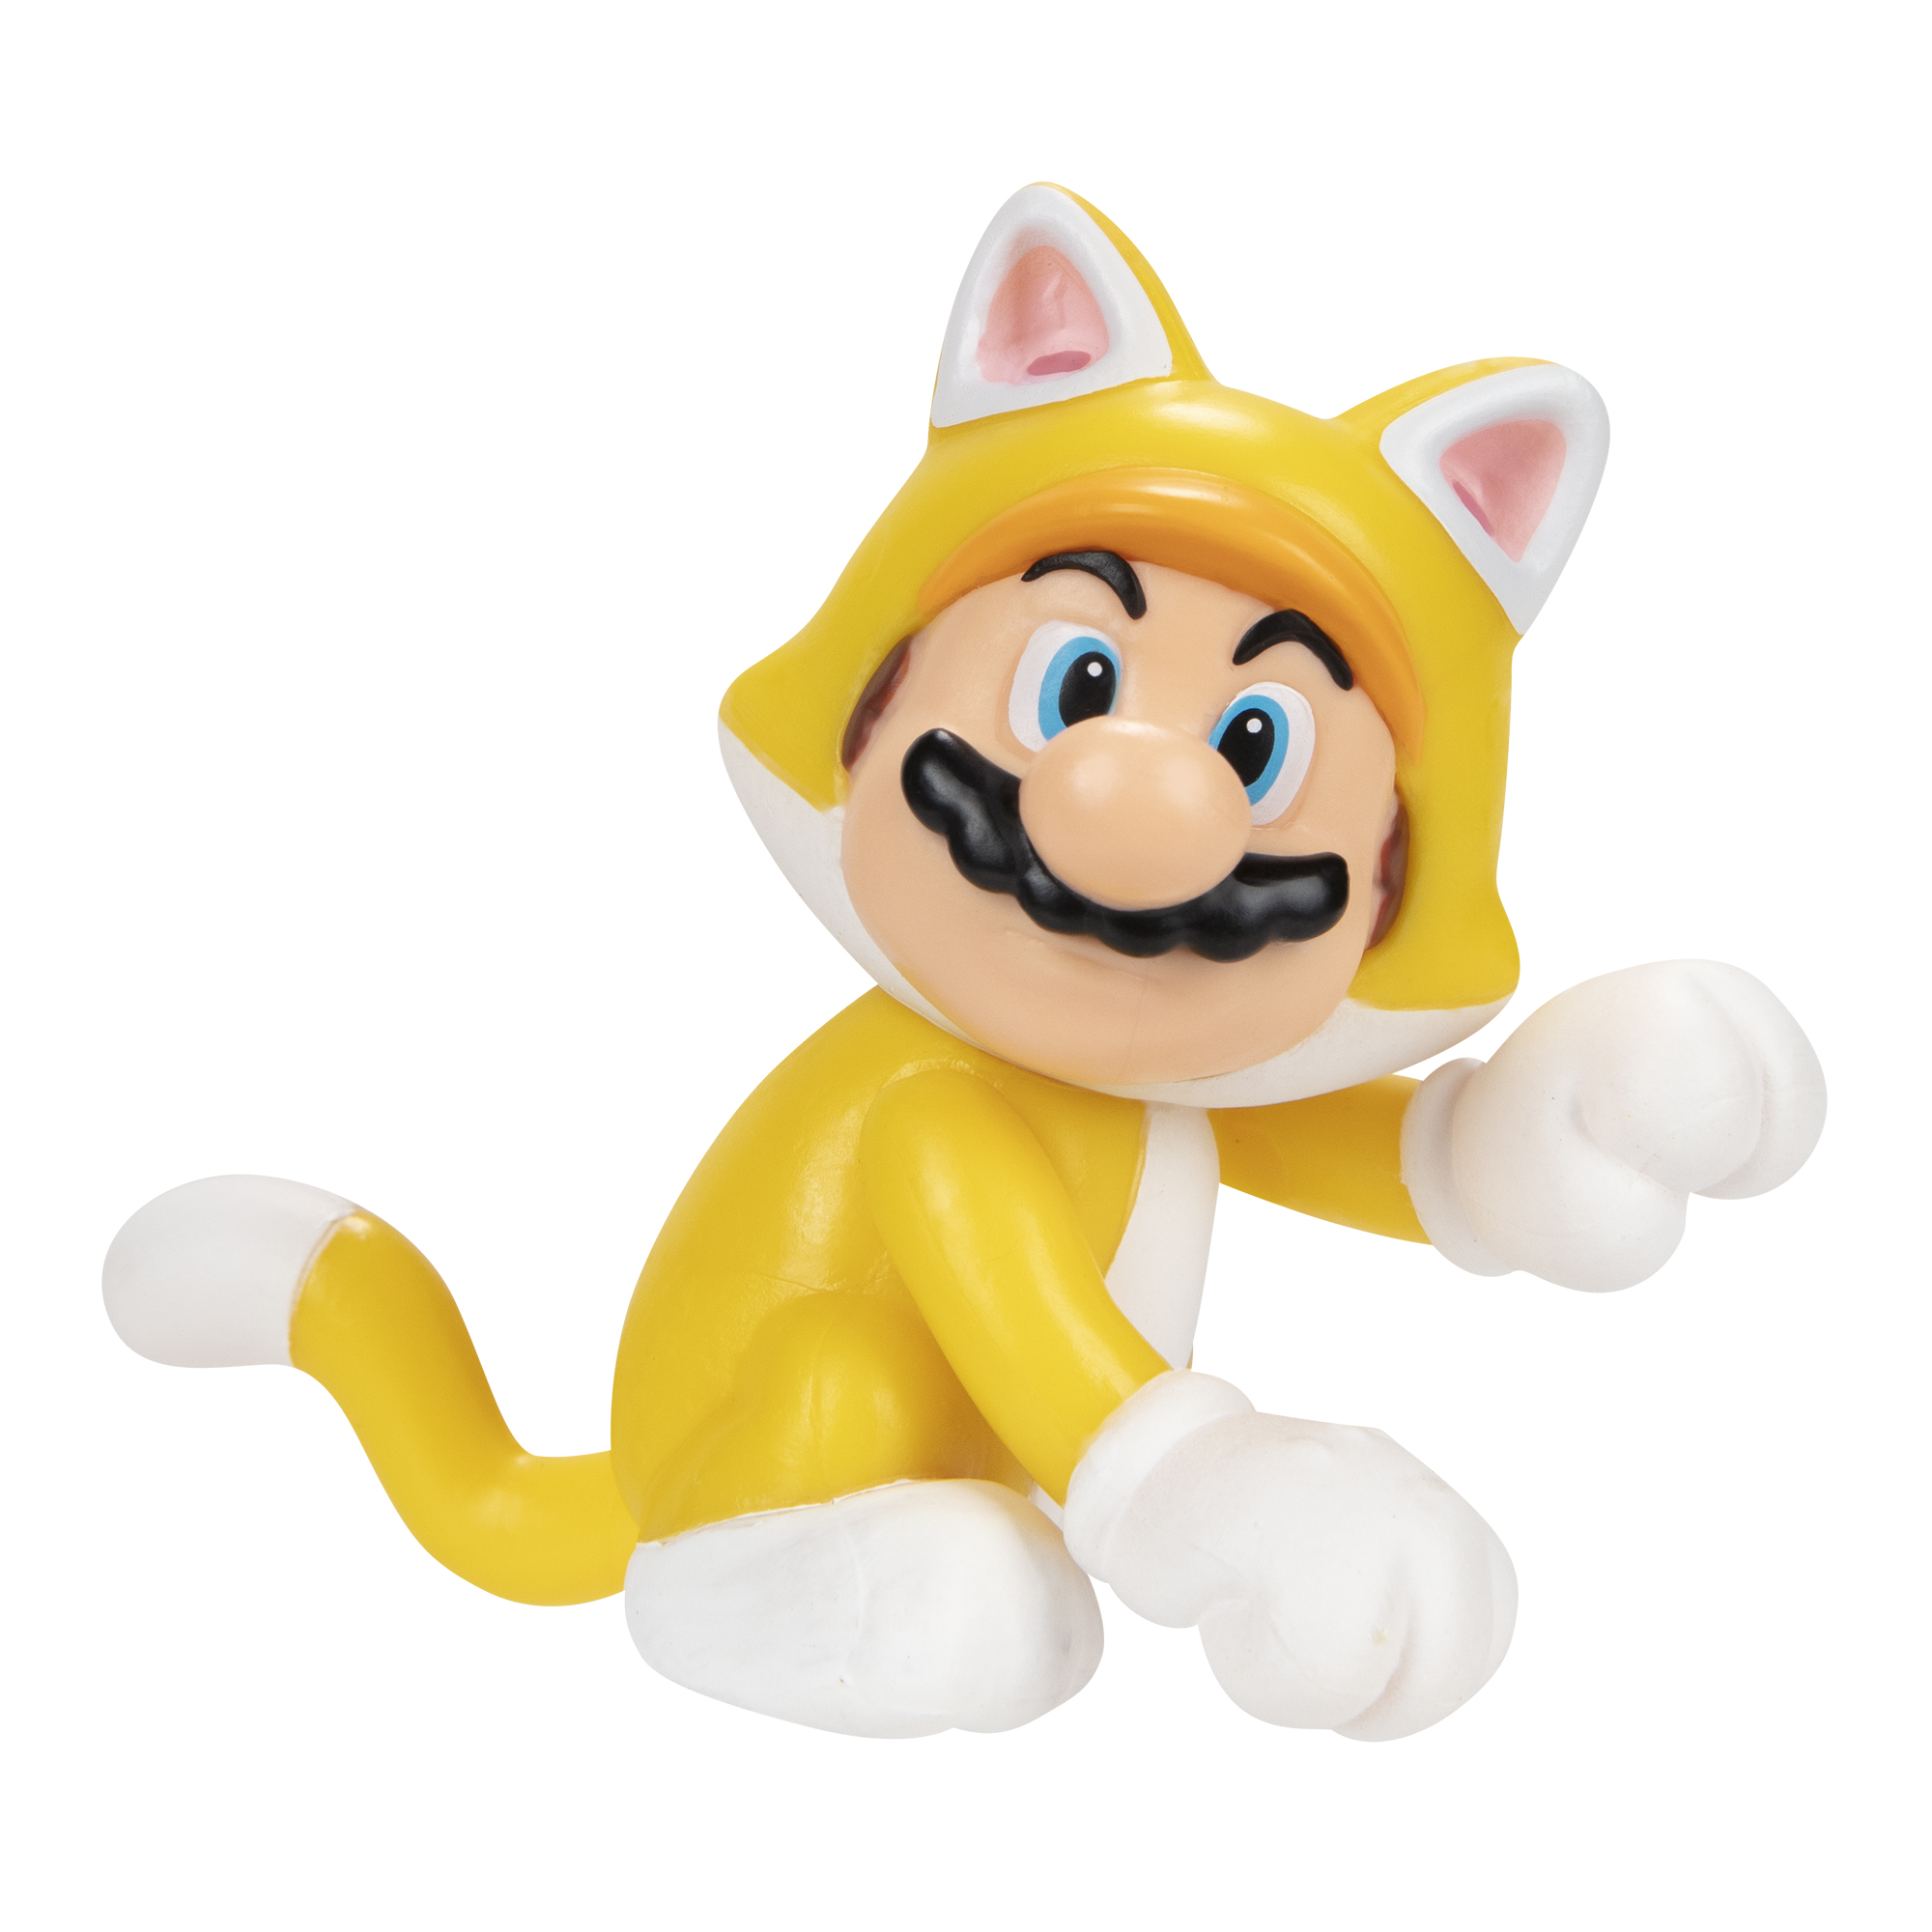 MARIO Mario, Mario Nintendo Figur Super SUPER Spielware 6,5 cm Cat